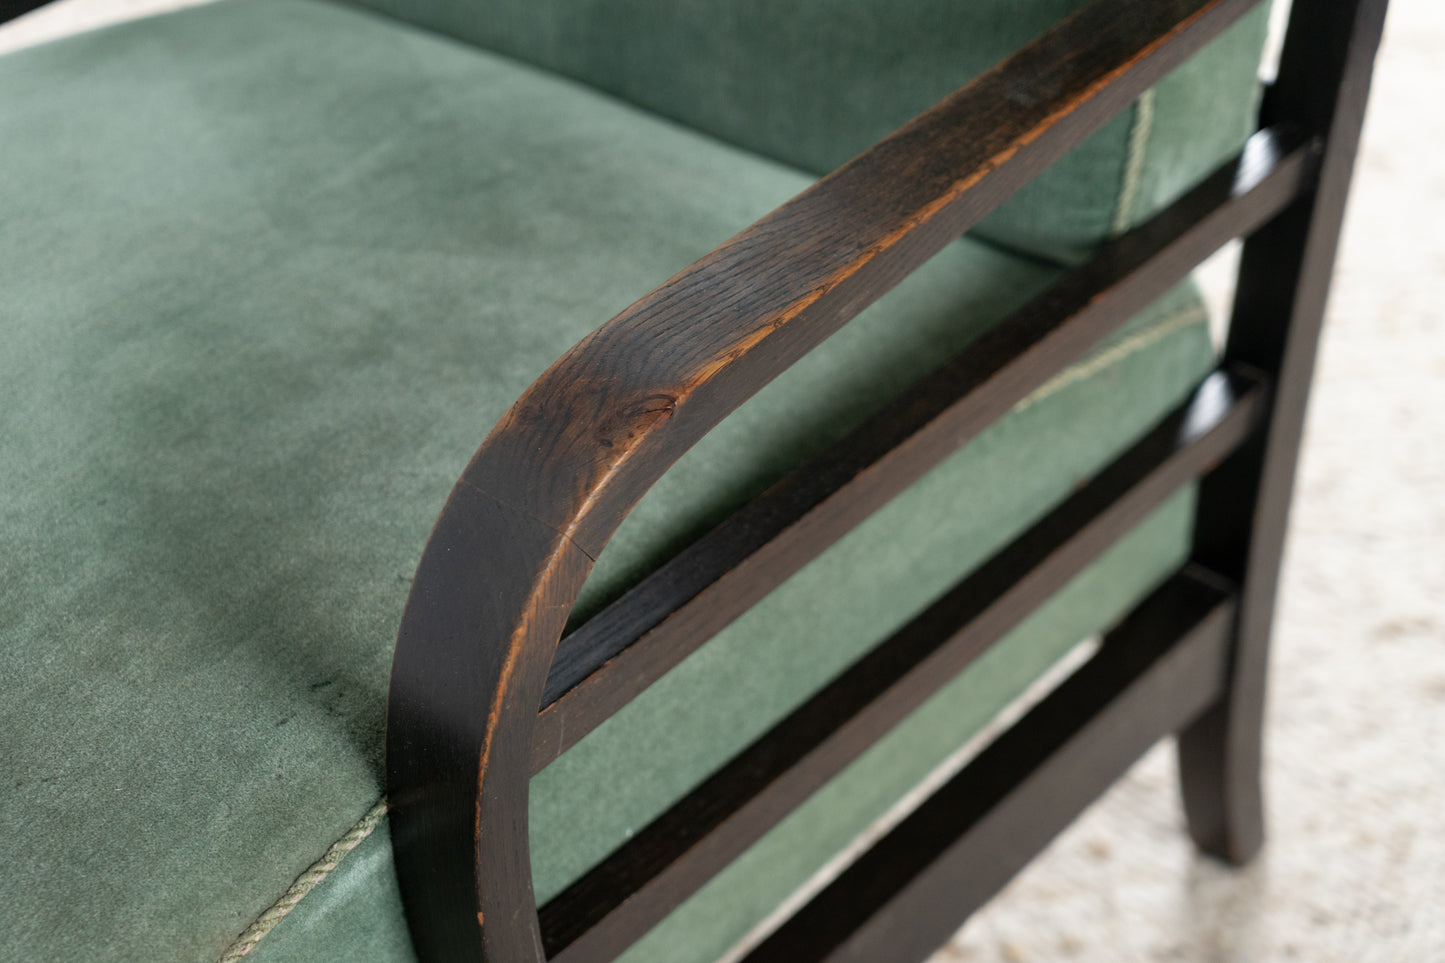 1 von 2 Vintage Sessel Holz Grün Samt Stuhl 60er Armchair